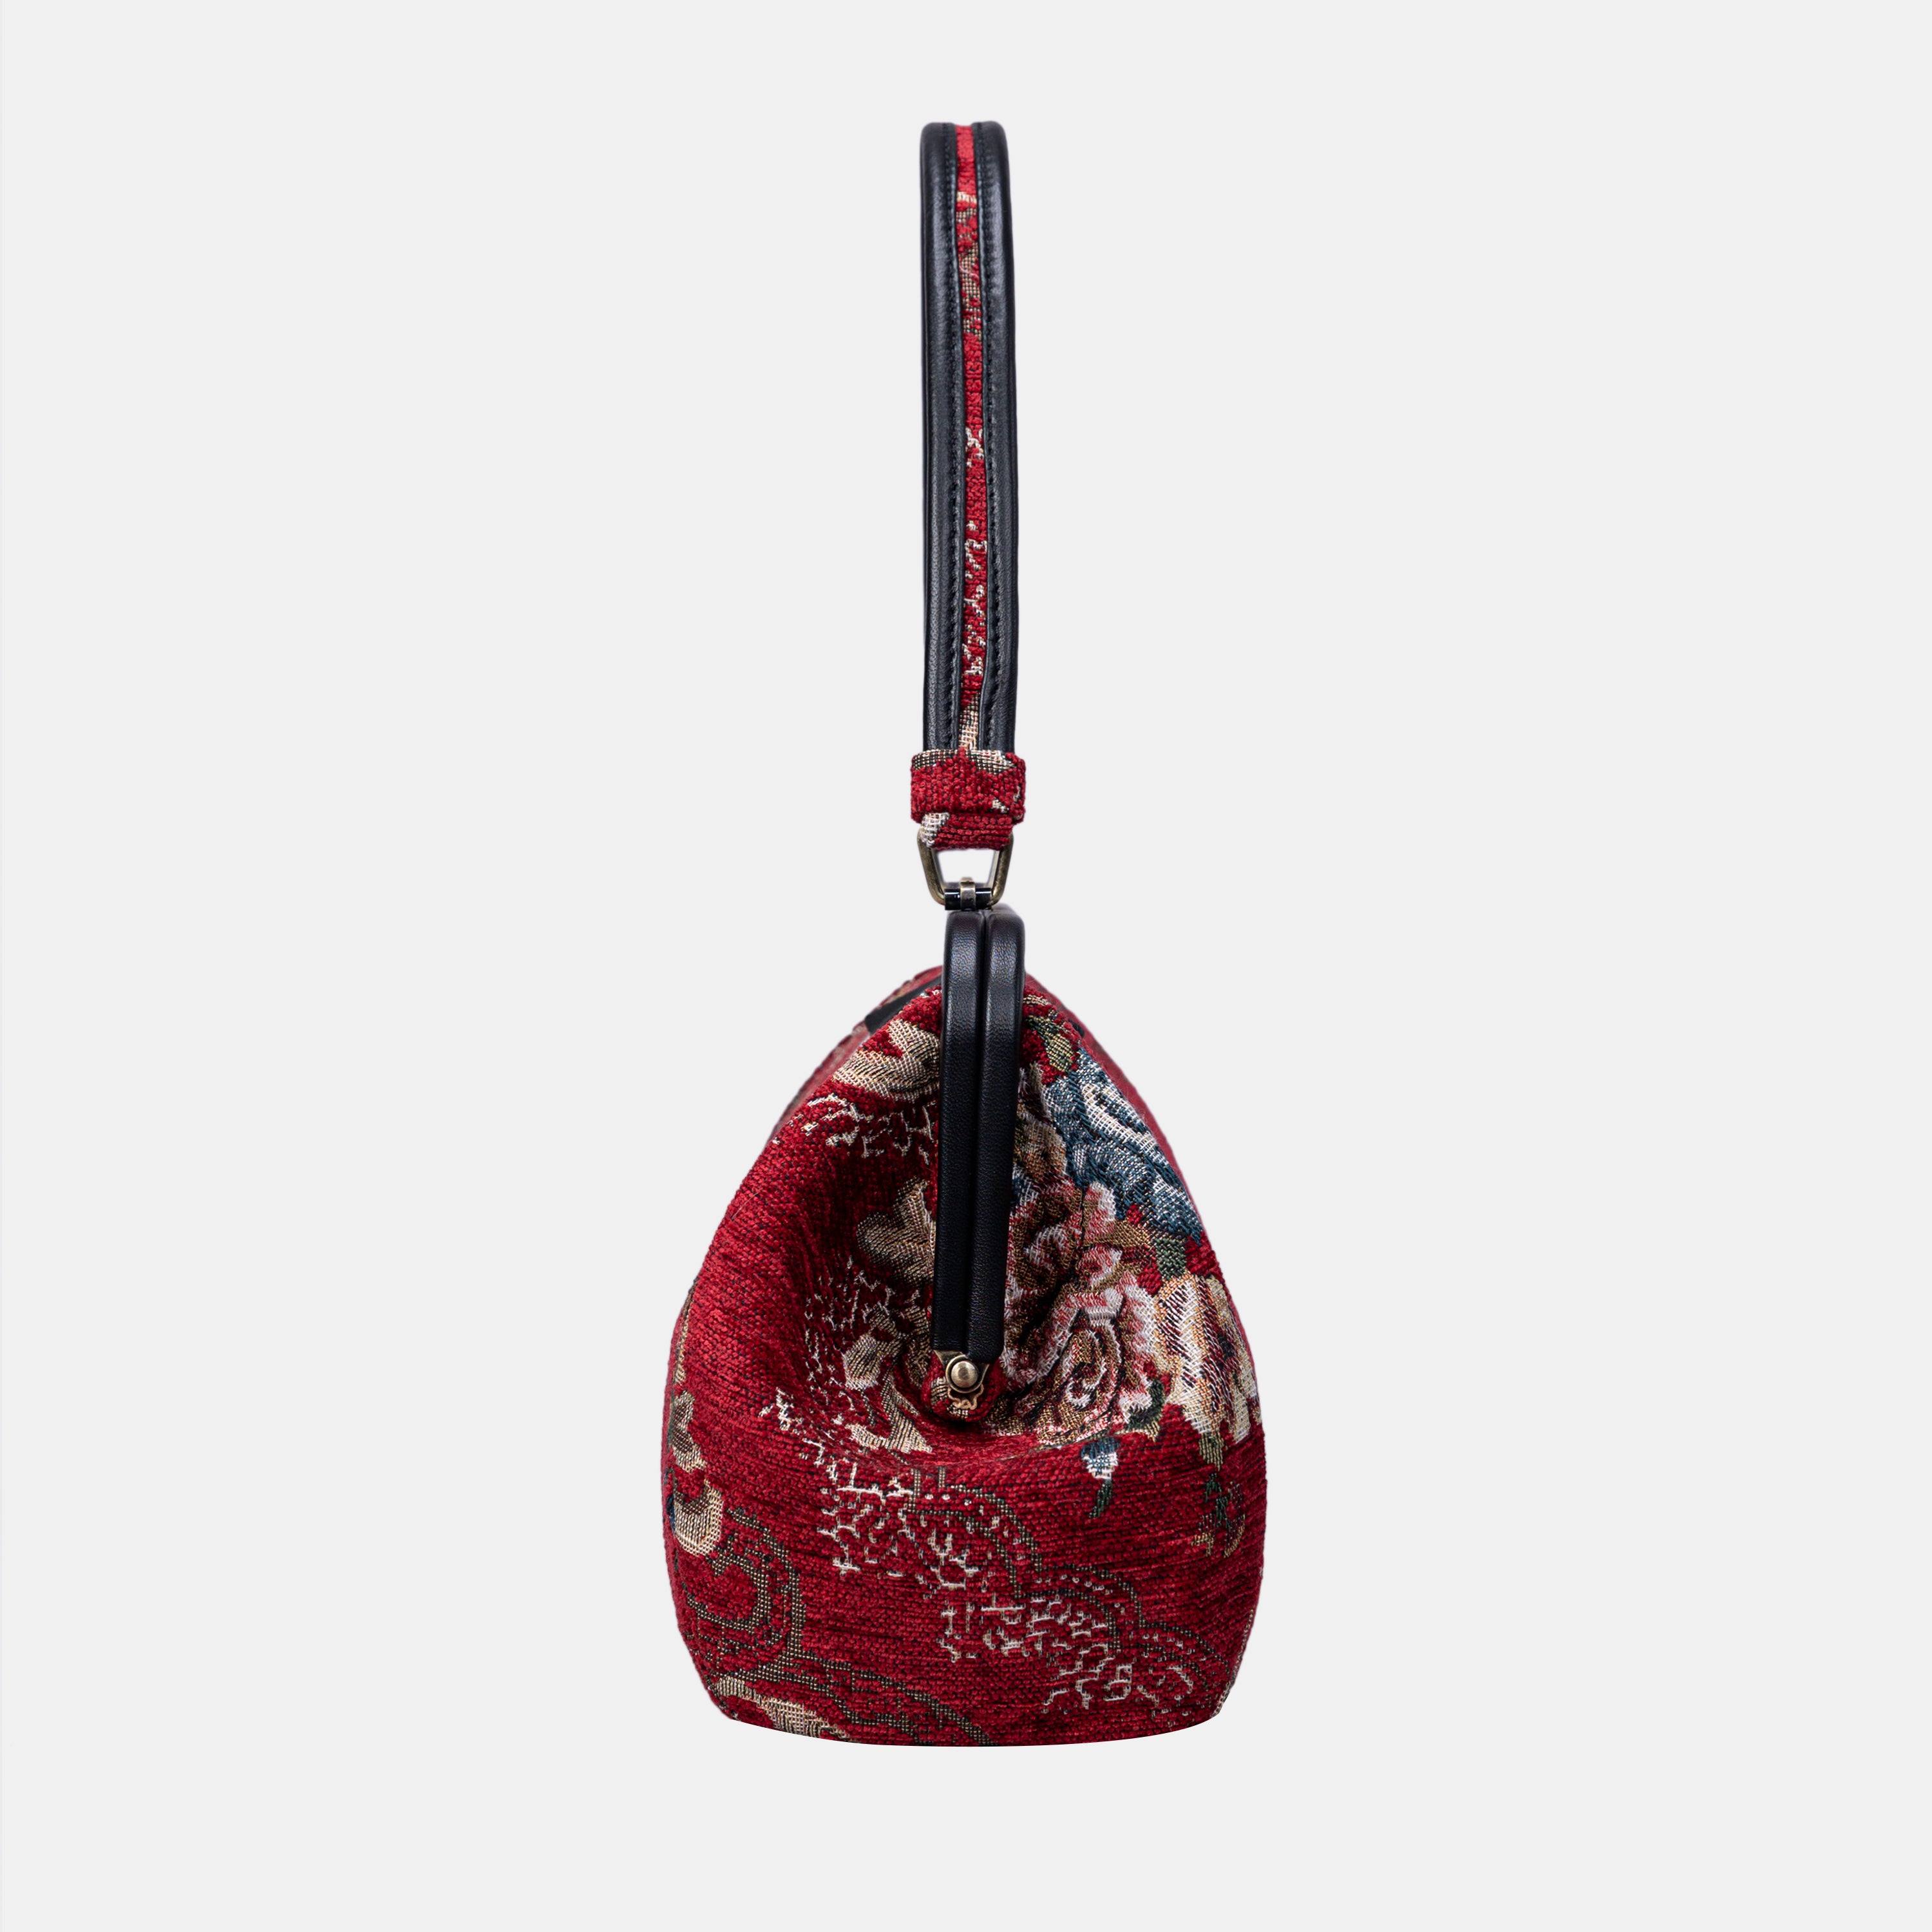 Floral Red Shoulder Bag